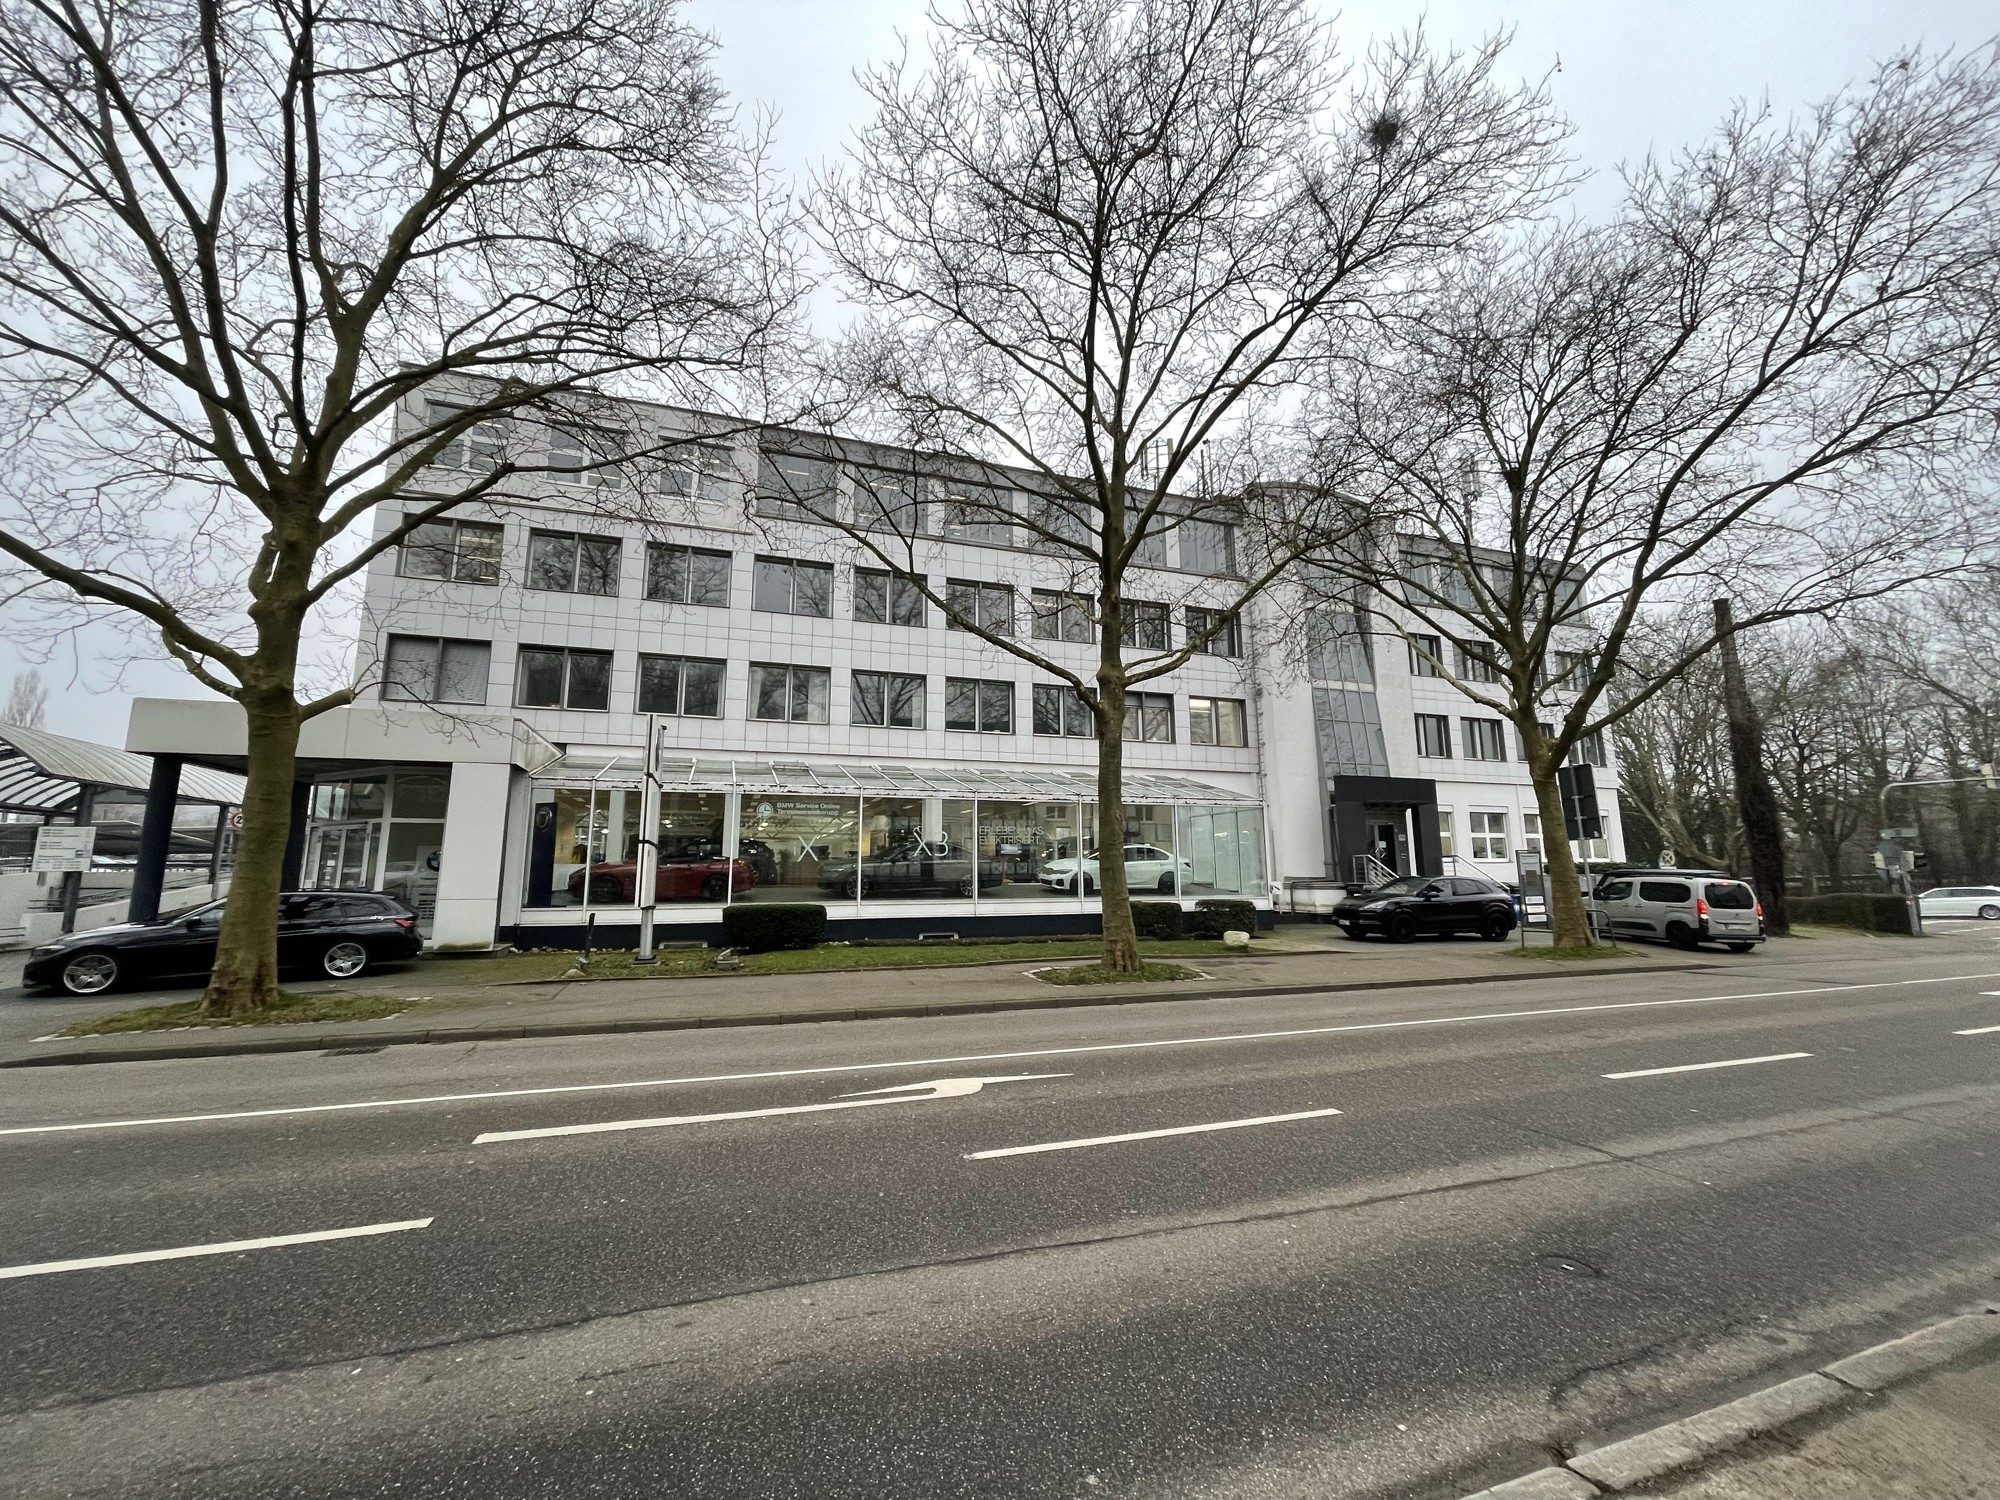 HUST Immobilien GmbH & Co. KG - Immobilienangebot - Baden-Baden - Alle - Bürofläche in repräsentativem Geschäftshaus in Baden-Baden zu vermieten
Sofort verfügbar